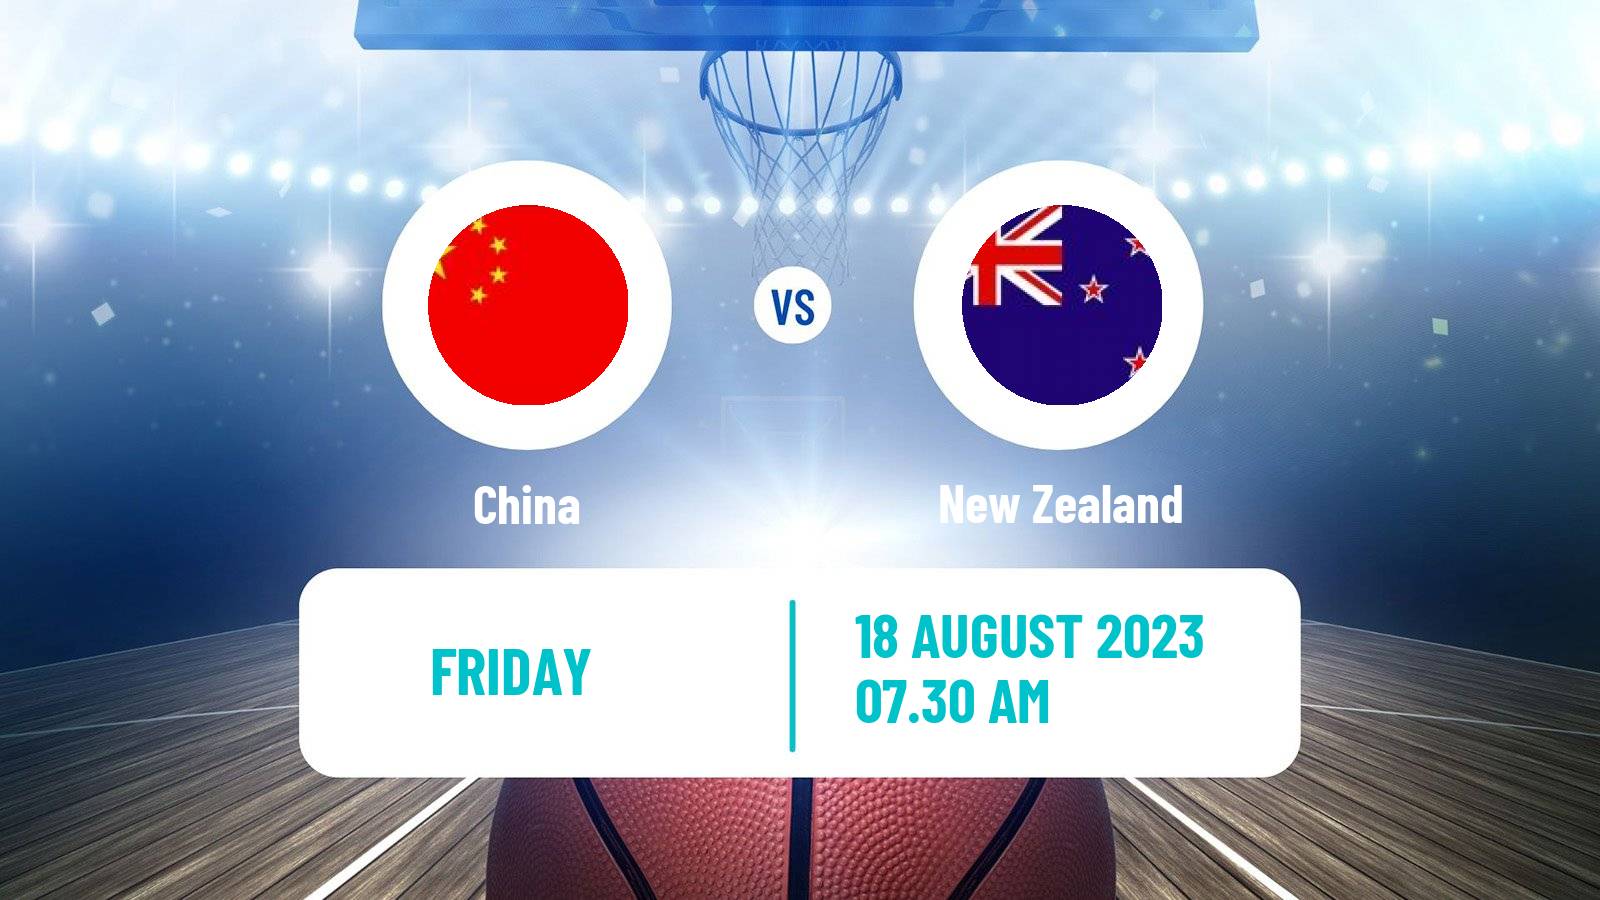 Basketball Friendly International Basketball China - New Zealand